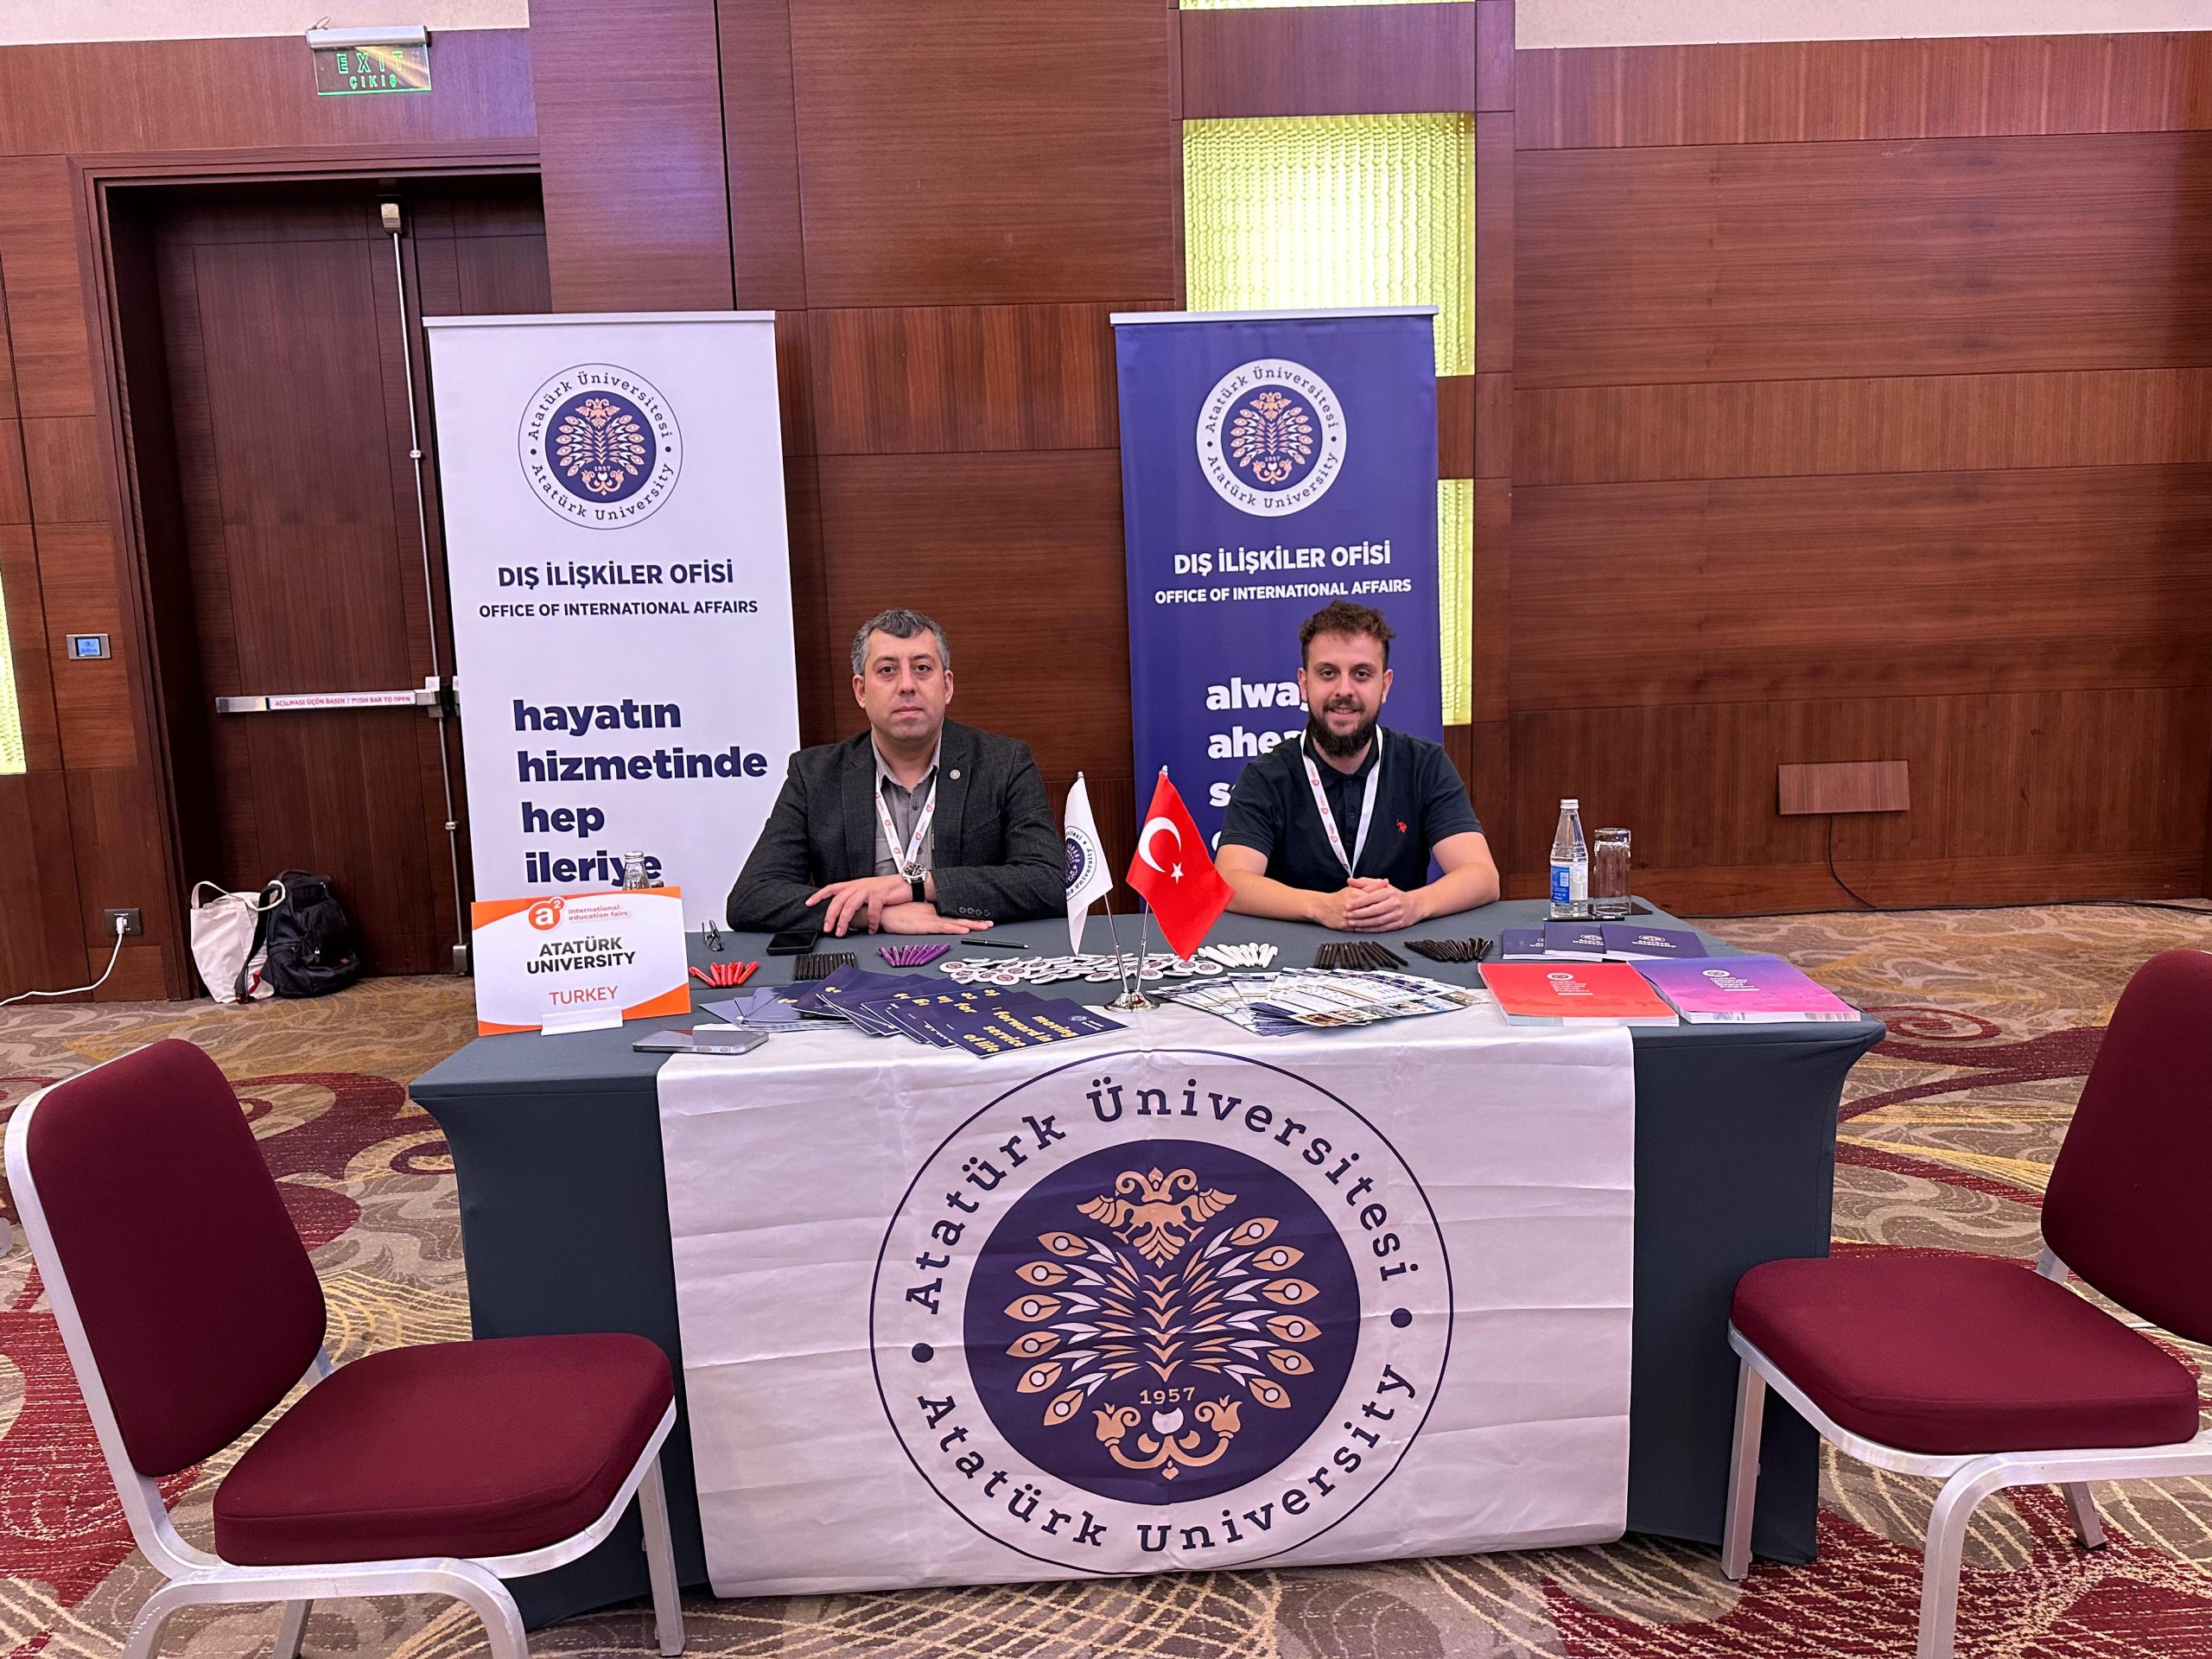 Dış İlişkiler Ofisi Azerbaycan Bakü’de Düzenlenen Uluslararası Eğitim Fuarına Katıldı.